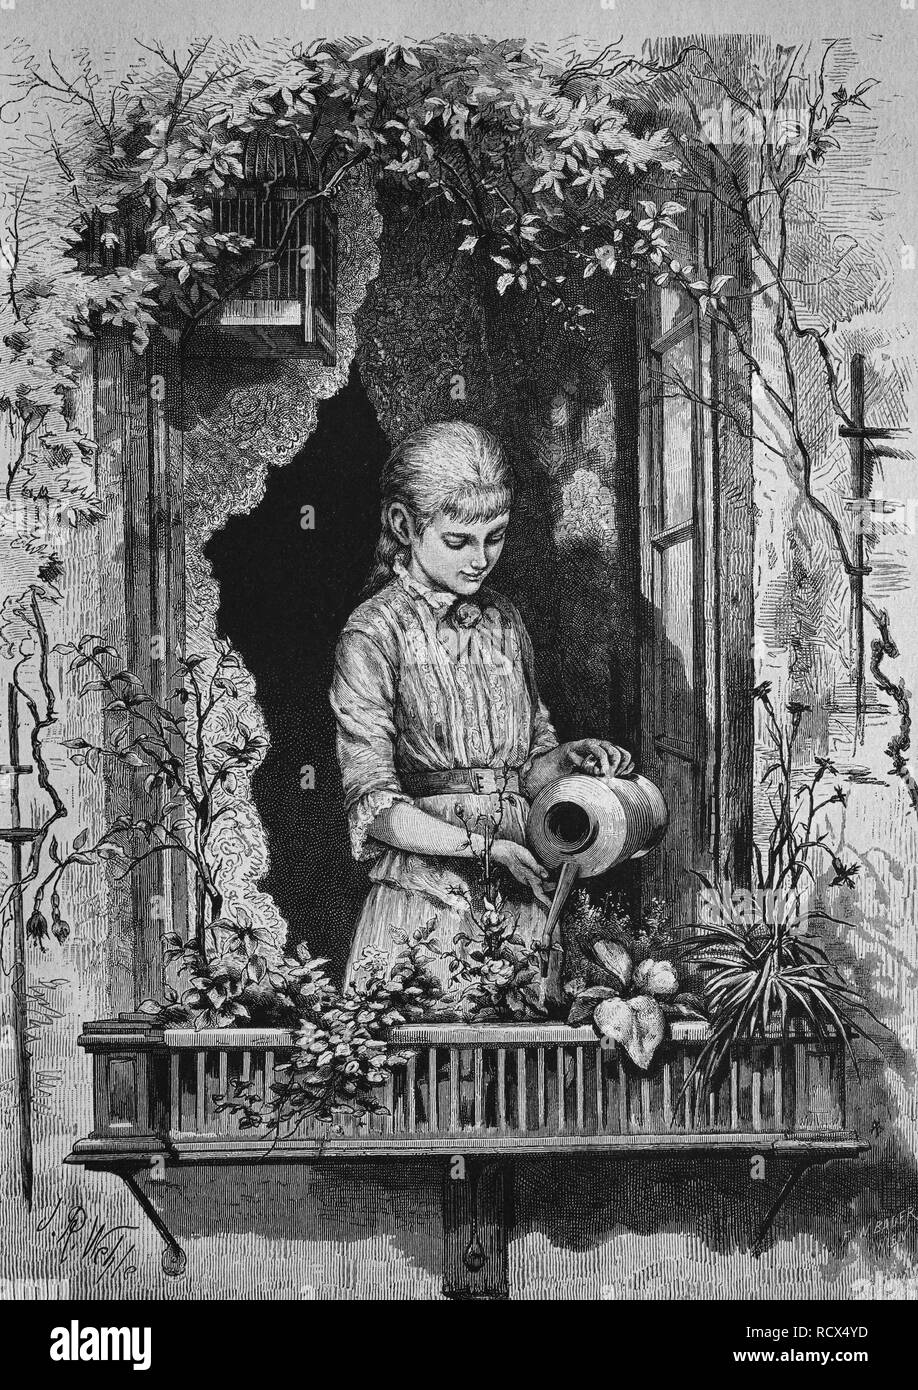 Girl watering flowers, wood engraving, 1880 Stock Photo